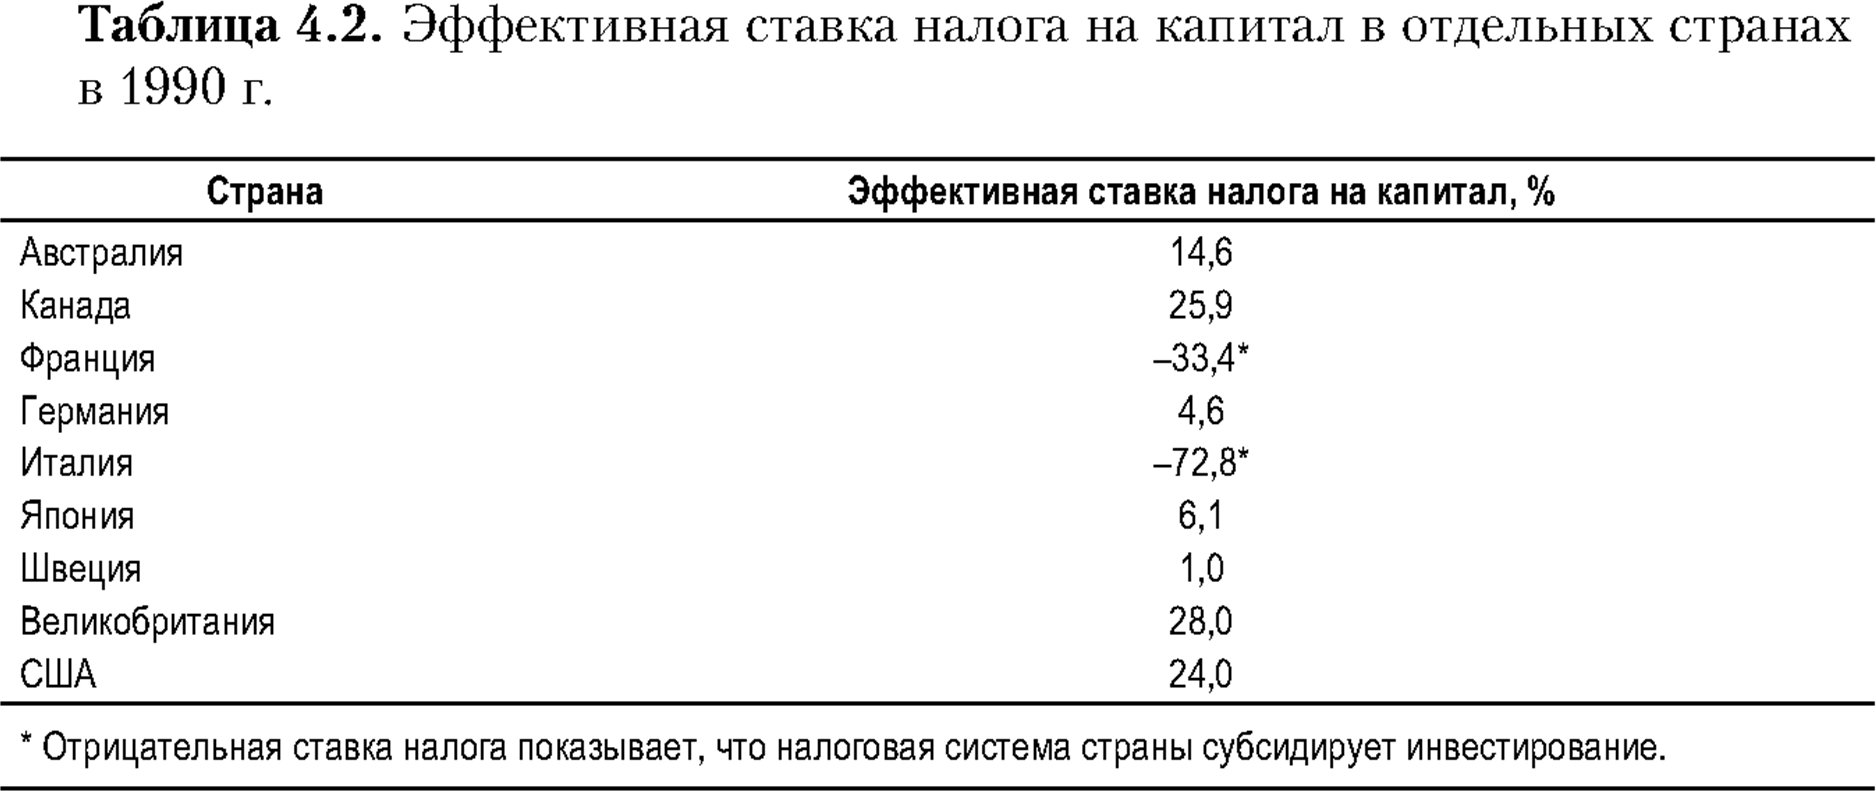 Эффективная ставка налога на капитал в отдельных странах в 1990 году